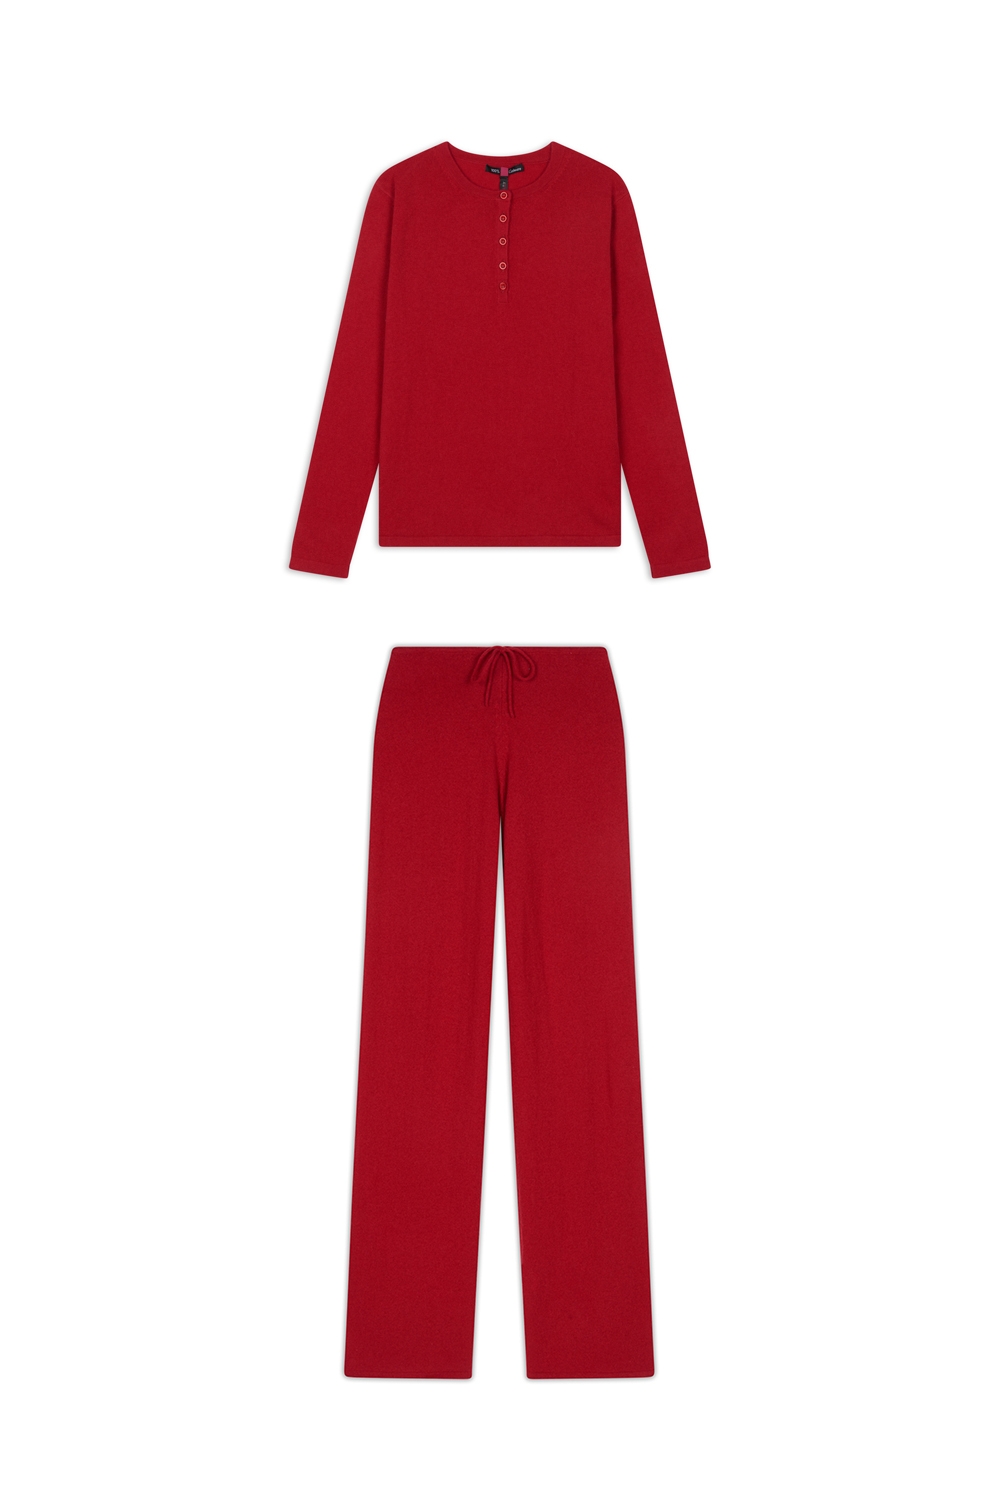 Cachemire accessoires homewear loan rouge velours xl